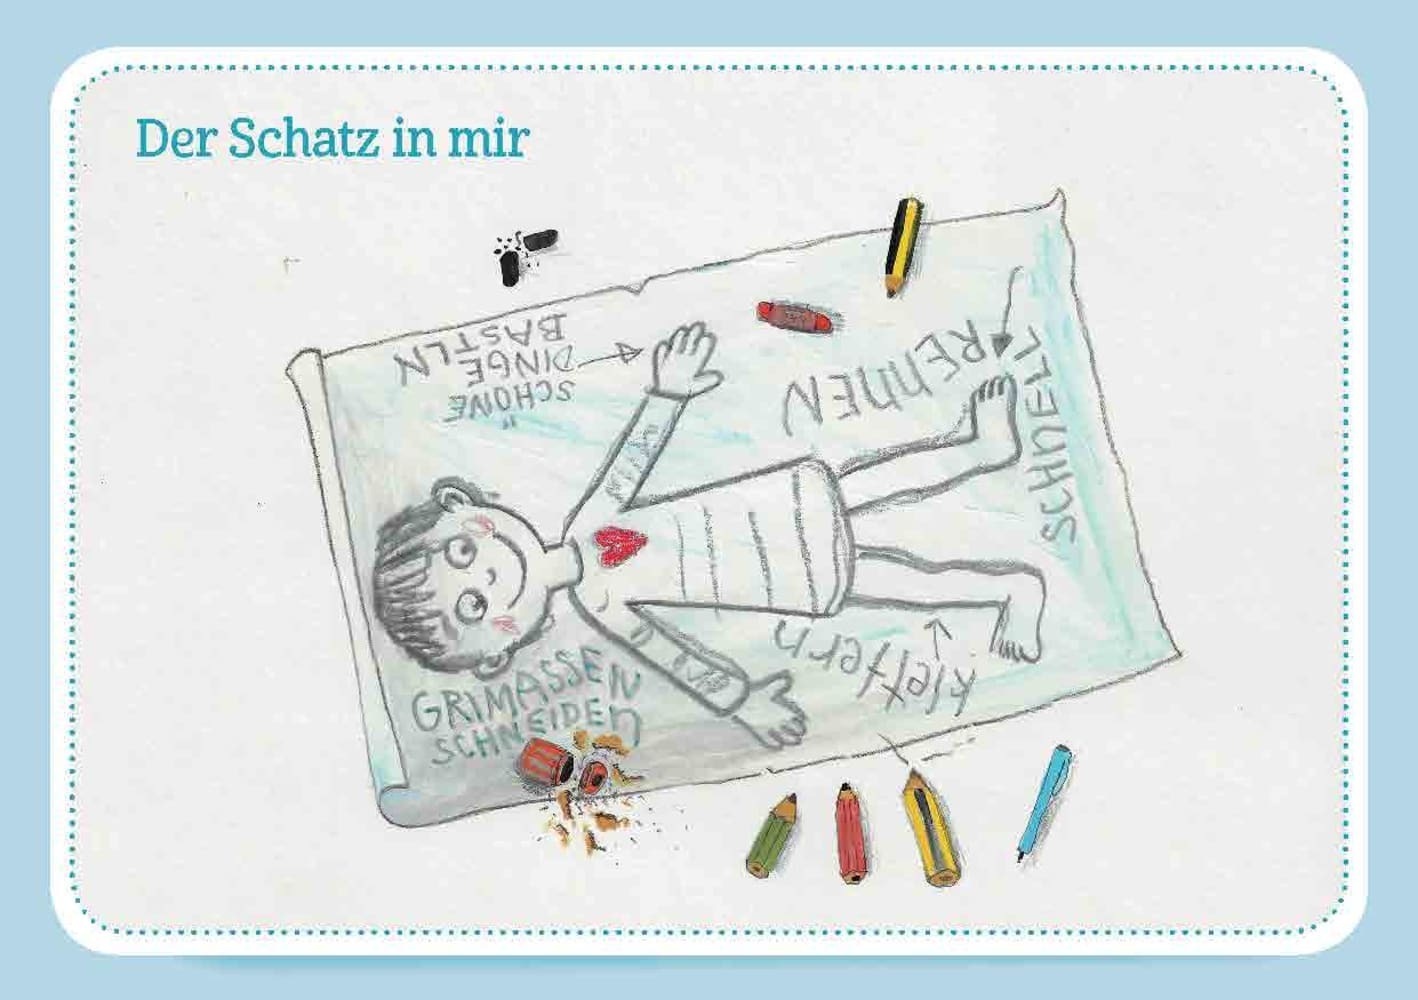 Kinder-Coaching: Den Schatz in mir finden, m. 1 Beilage